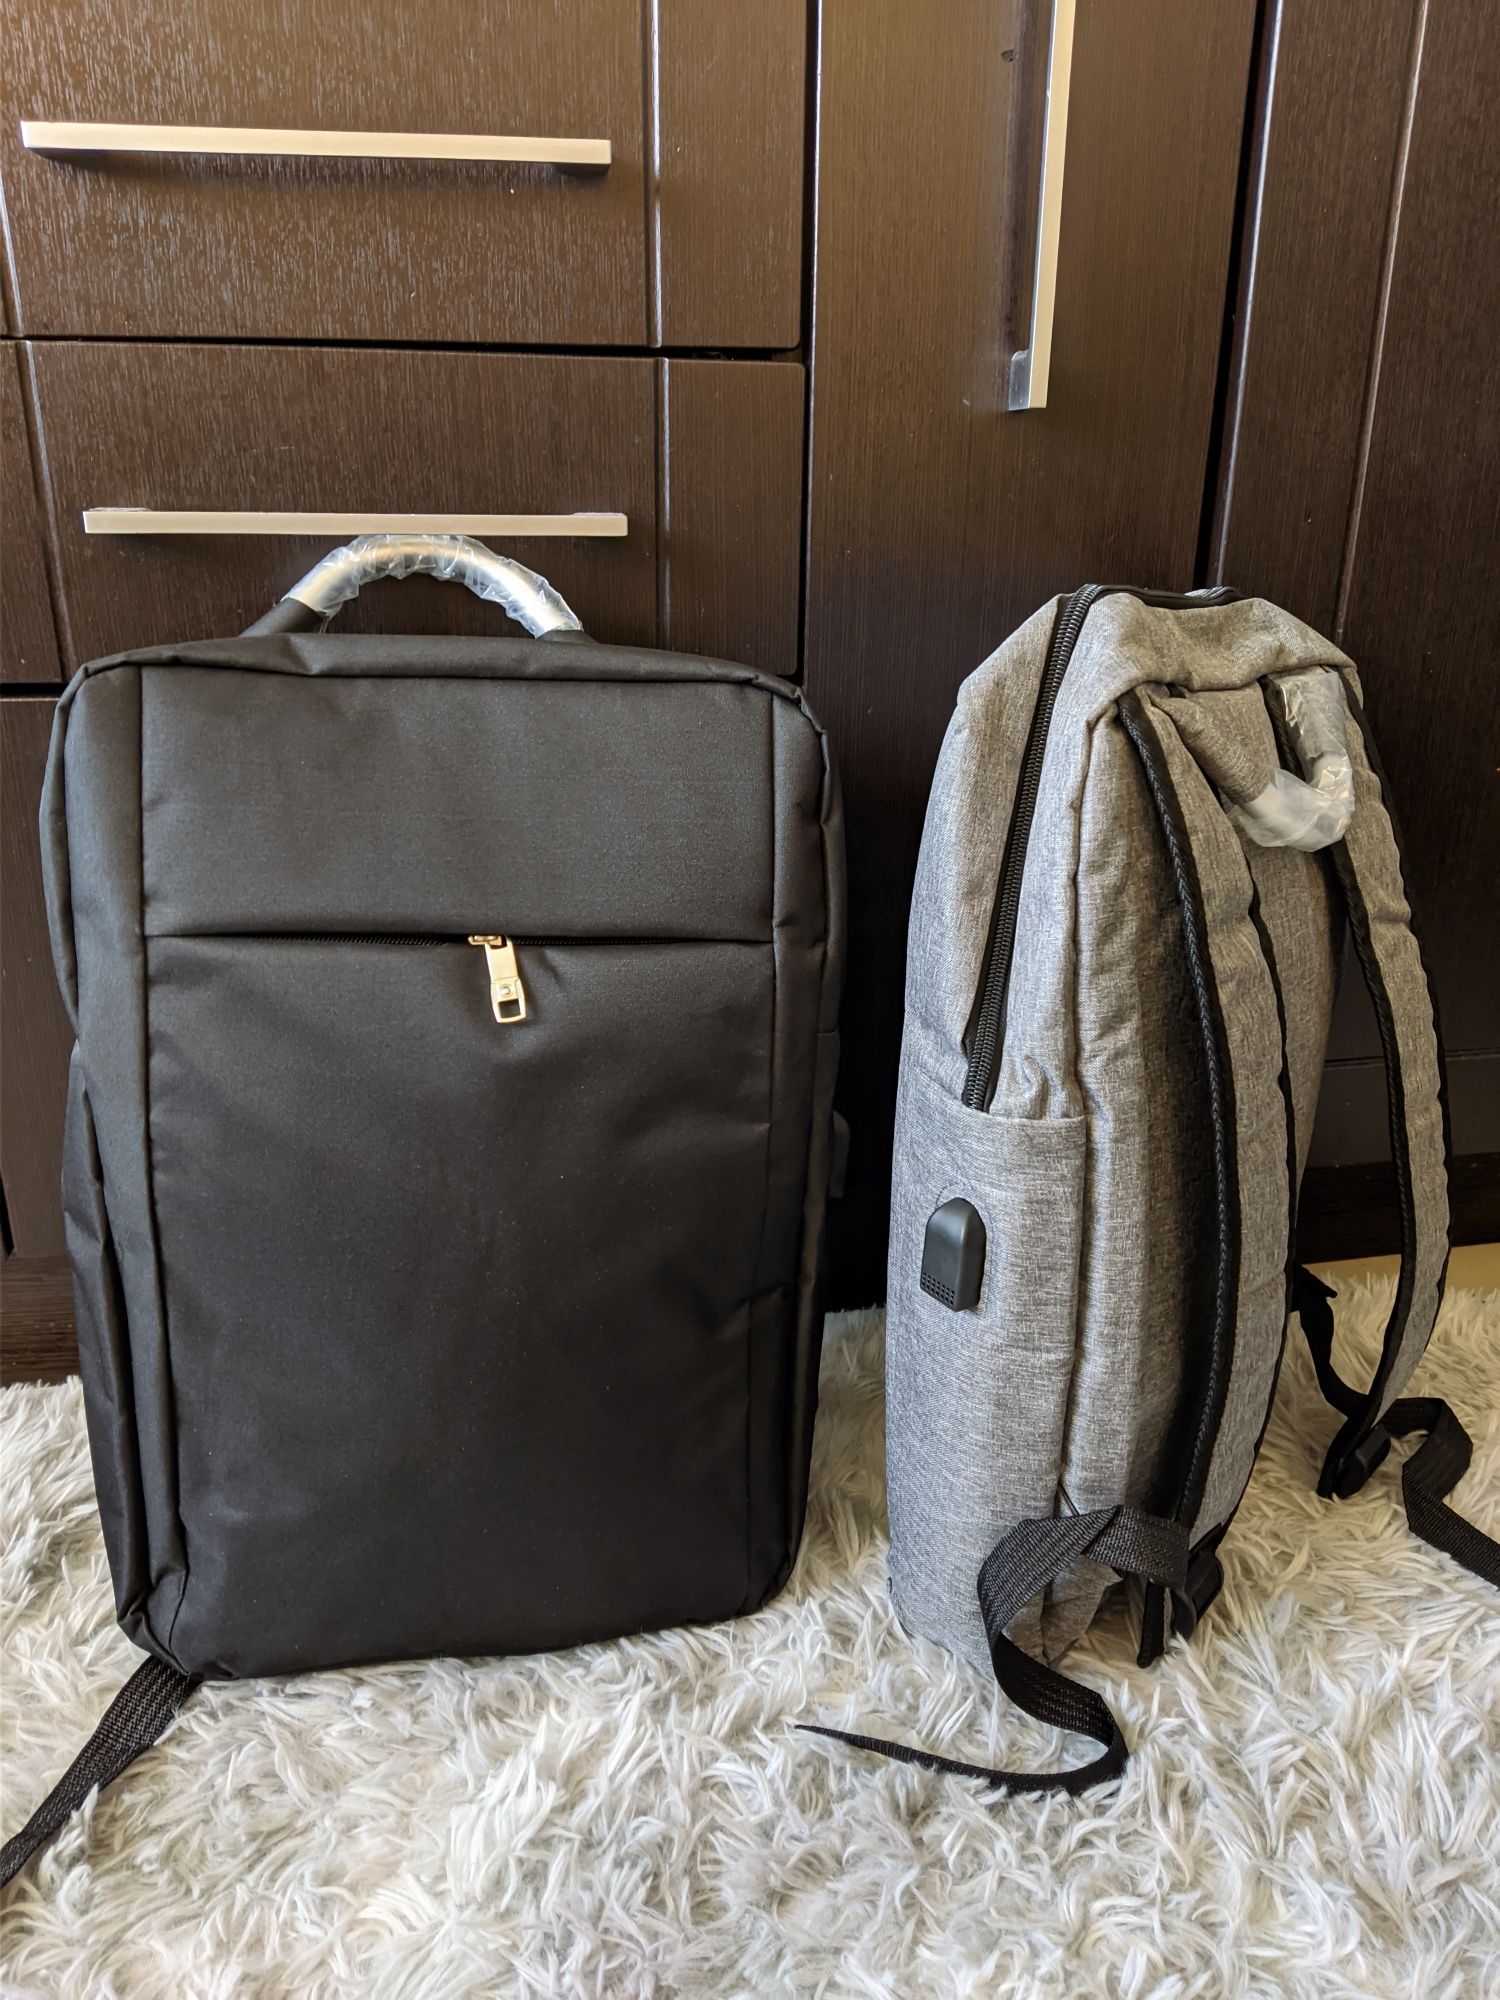 Комп’ютерний рюкзак,портфель,сумка сірий